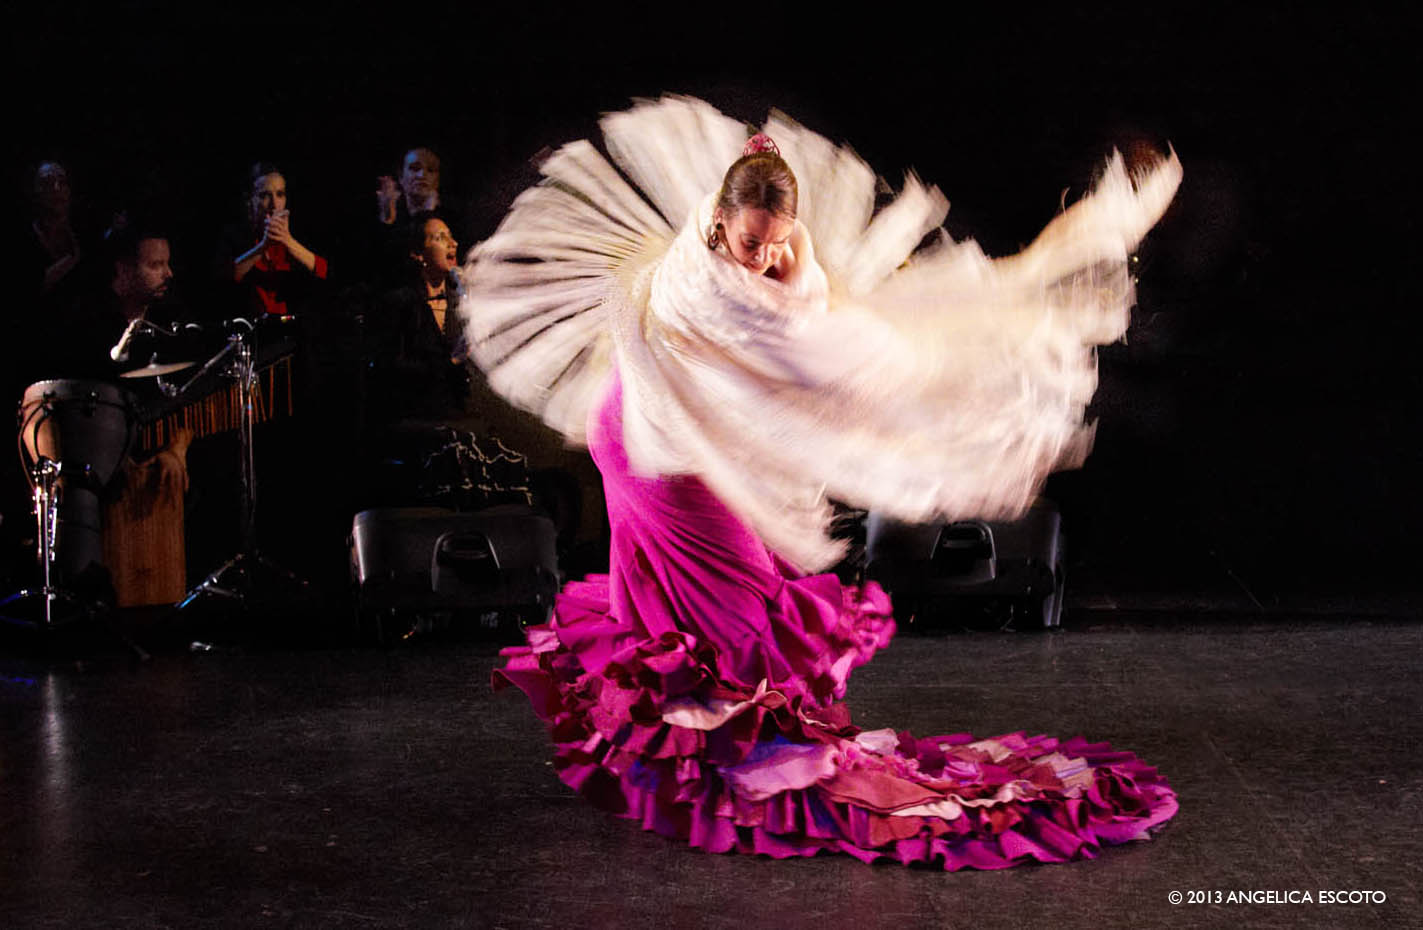 LIVE FLAMENCO PERFORMANCE: A Palo Seco Flamenco Company